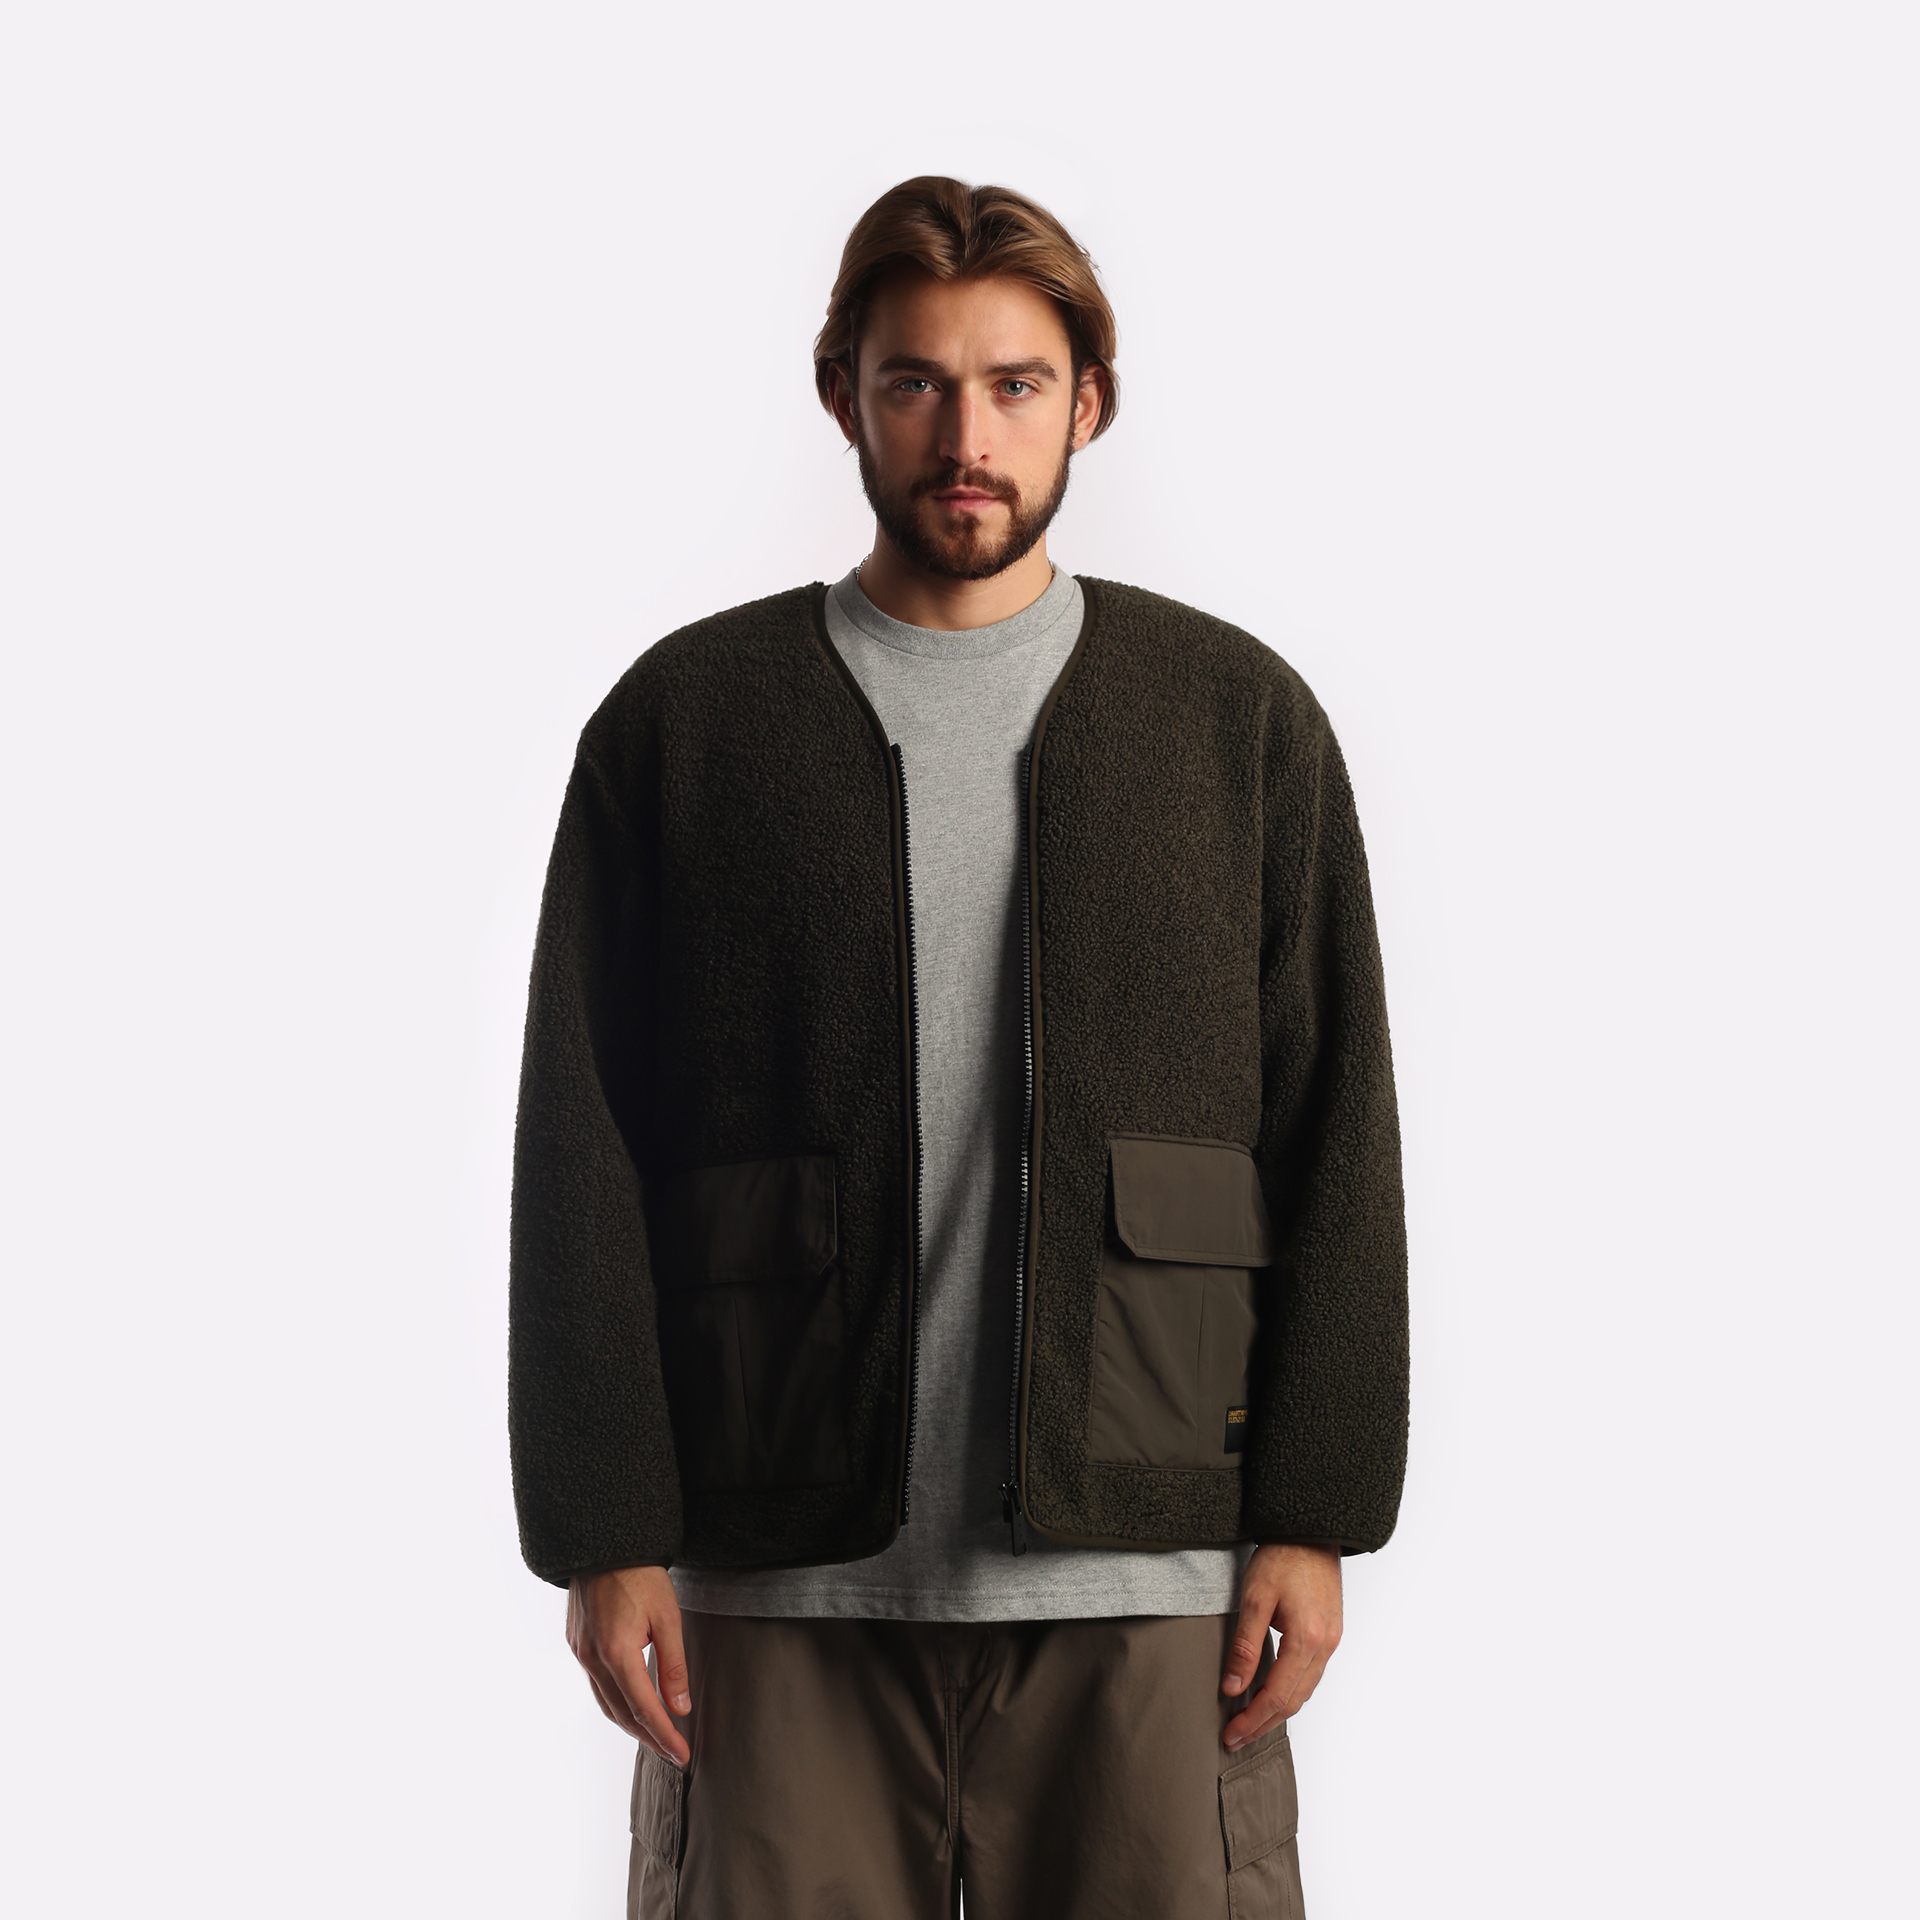 мужская куртка Carhartt WIP Devin Liner  (I032244-cypress)  - цена, описание, фото 1